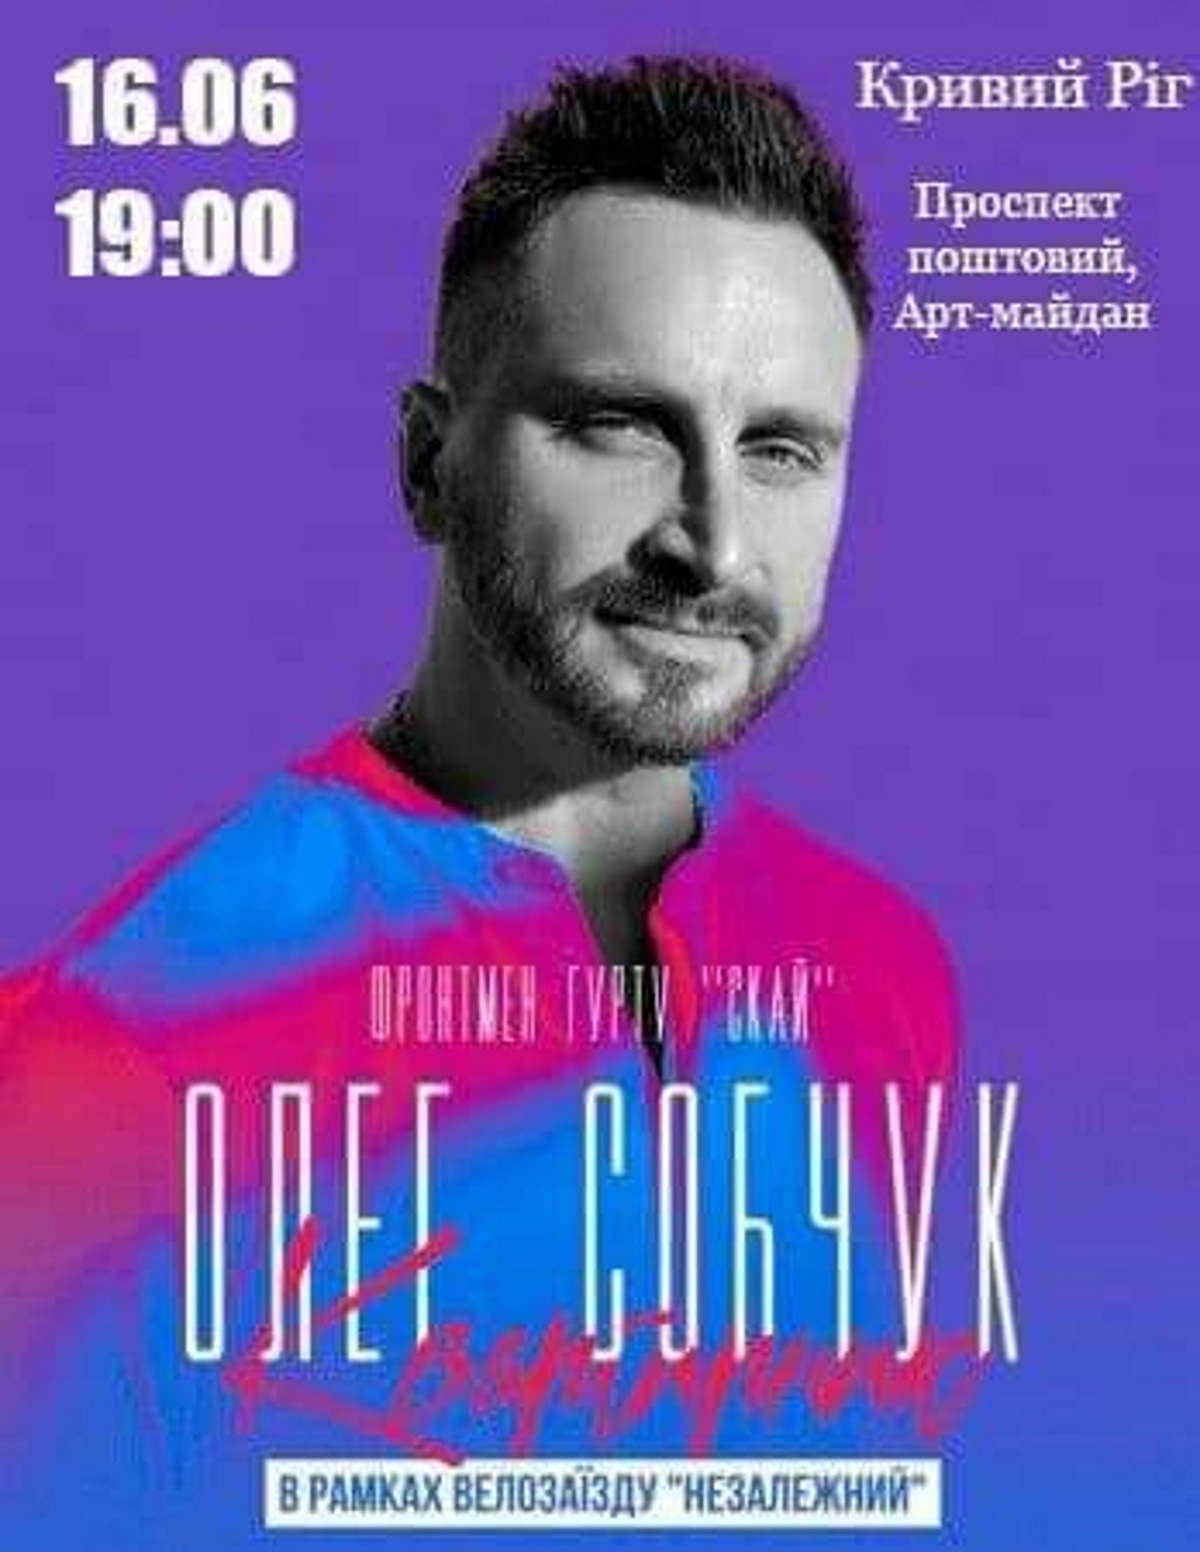 Олег Собчук 16 июня даст бесплатный концерт в Кривом Роге.